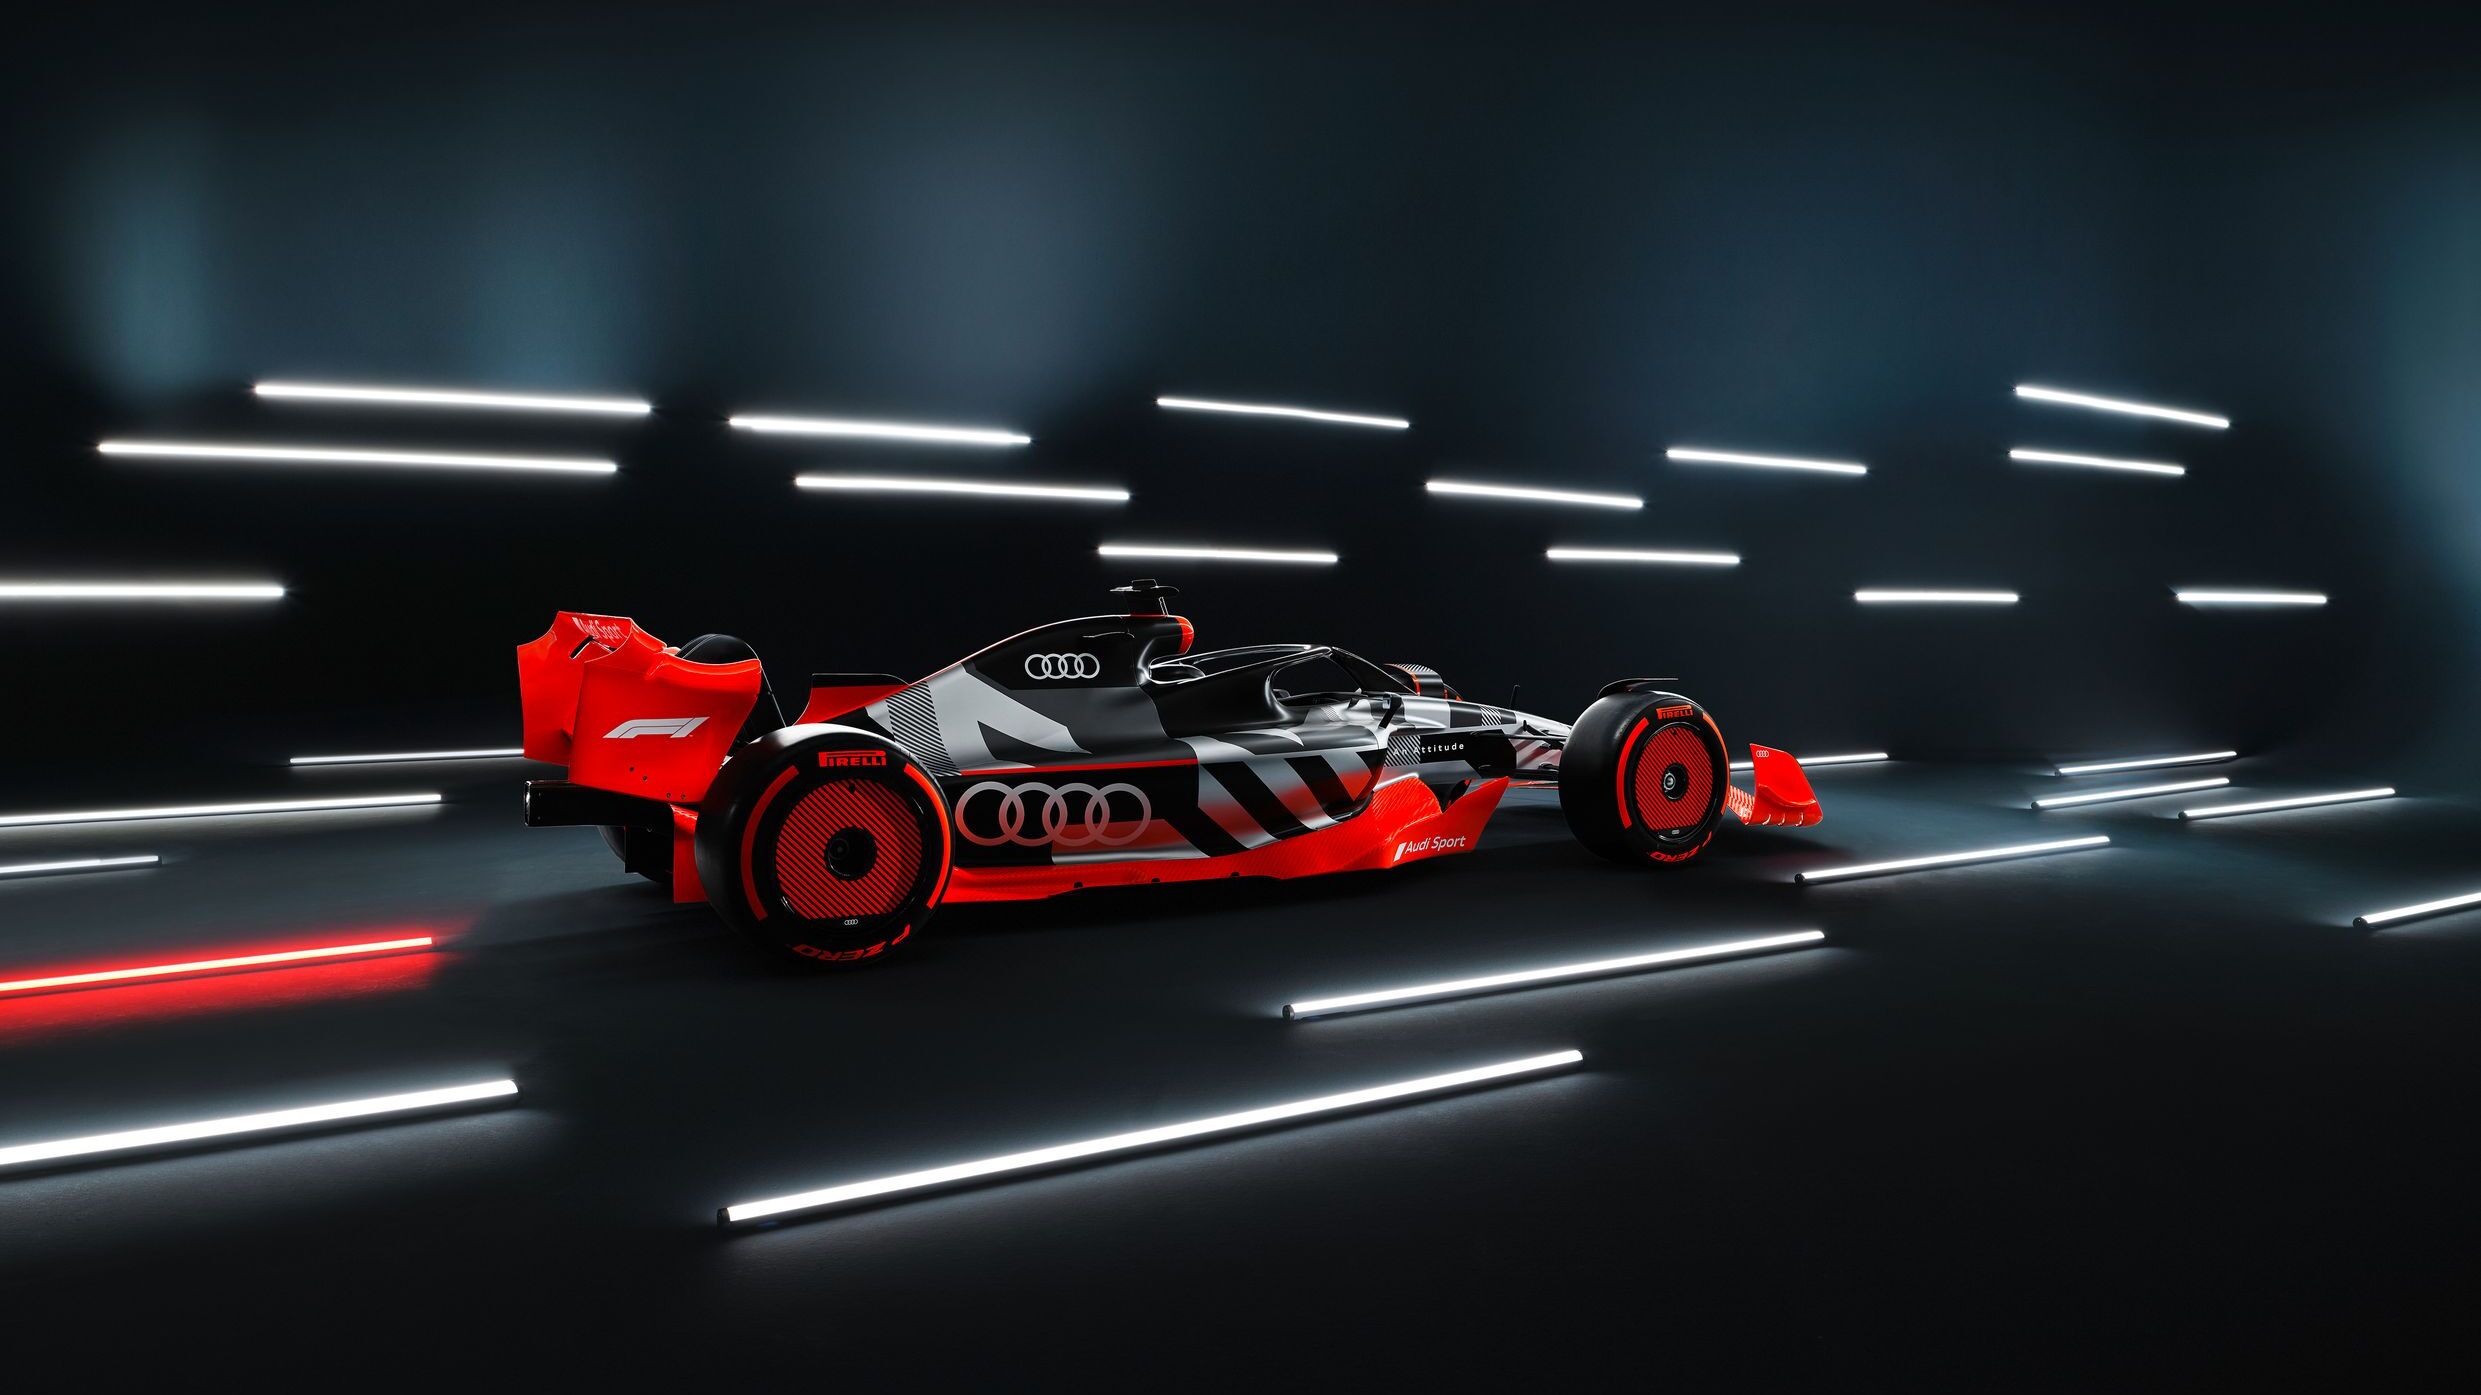 Una monoposto di Formula 1 adattata alla livrea Audi Sport (6)